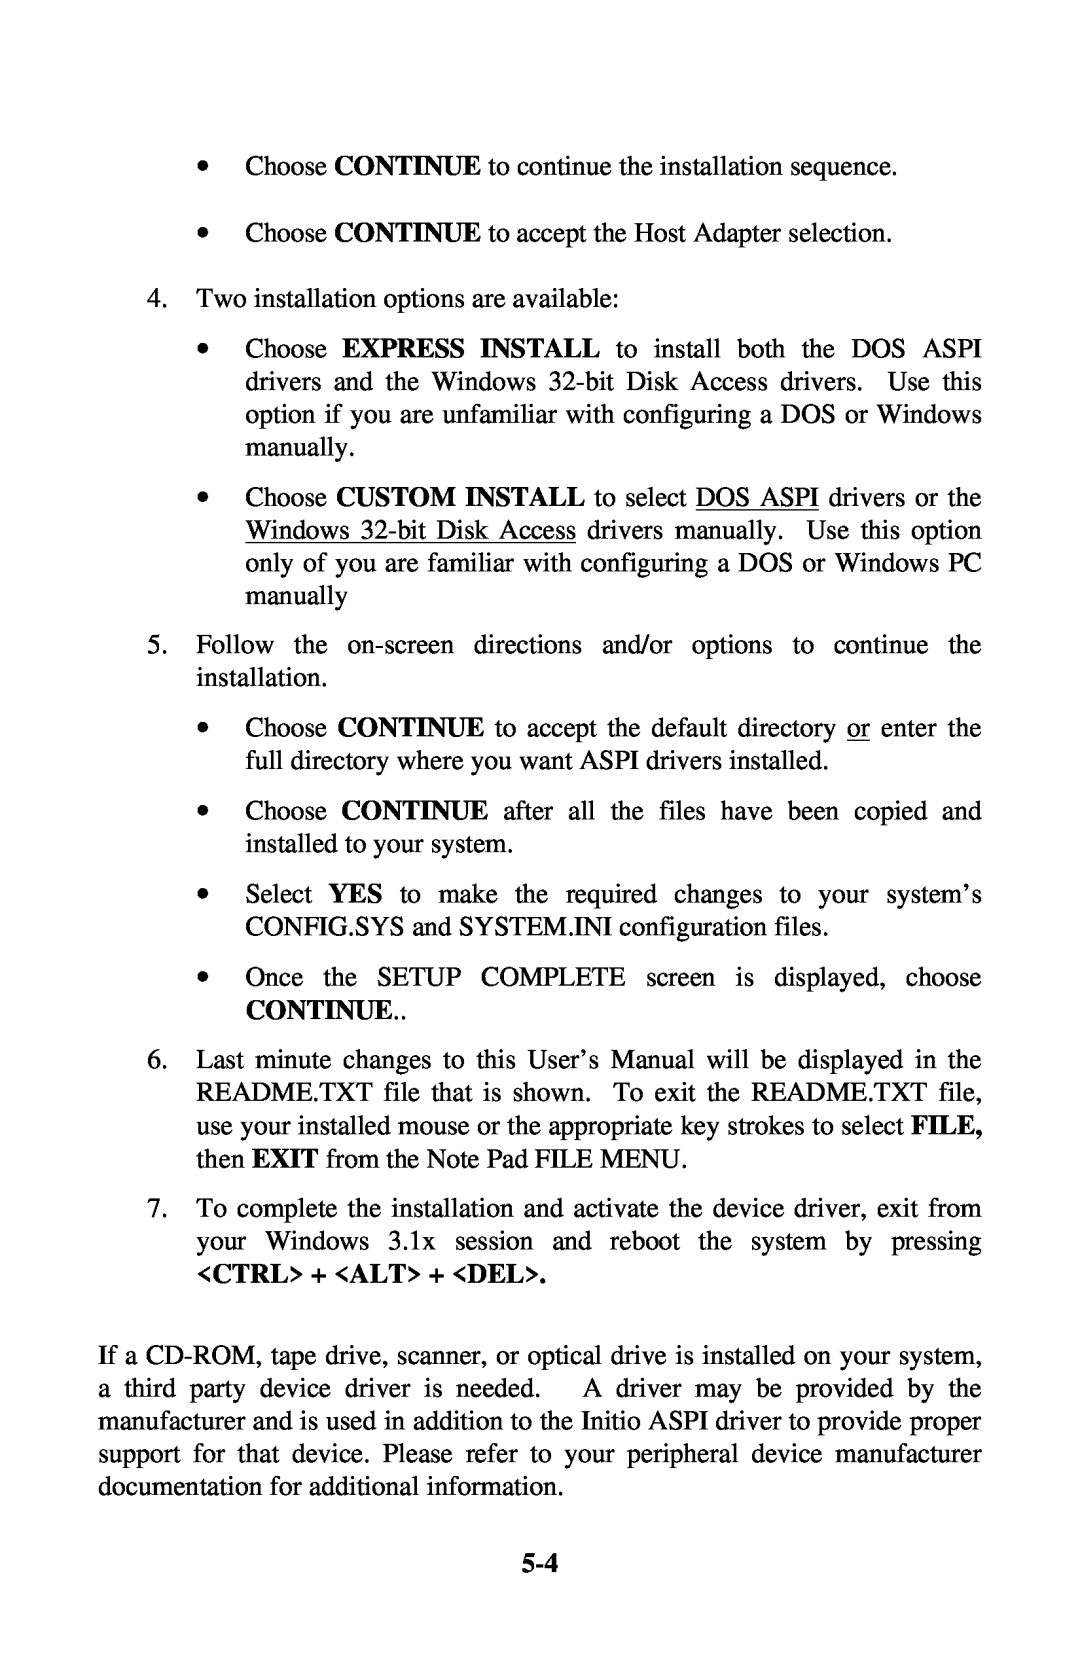 Initio INI-9100UW user manual Continue, Ctrl + Alt + Del 